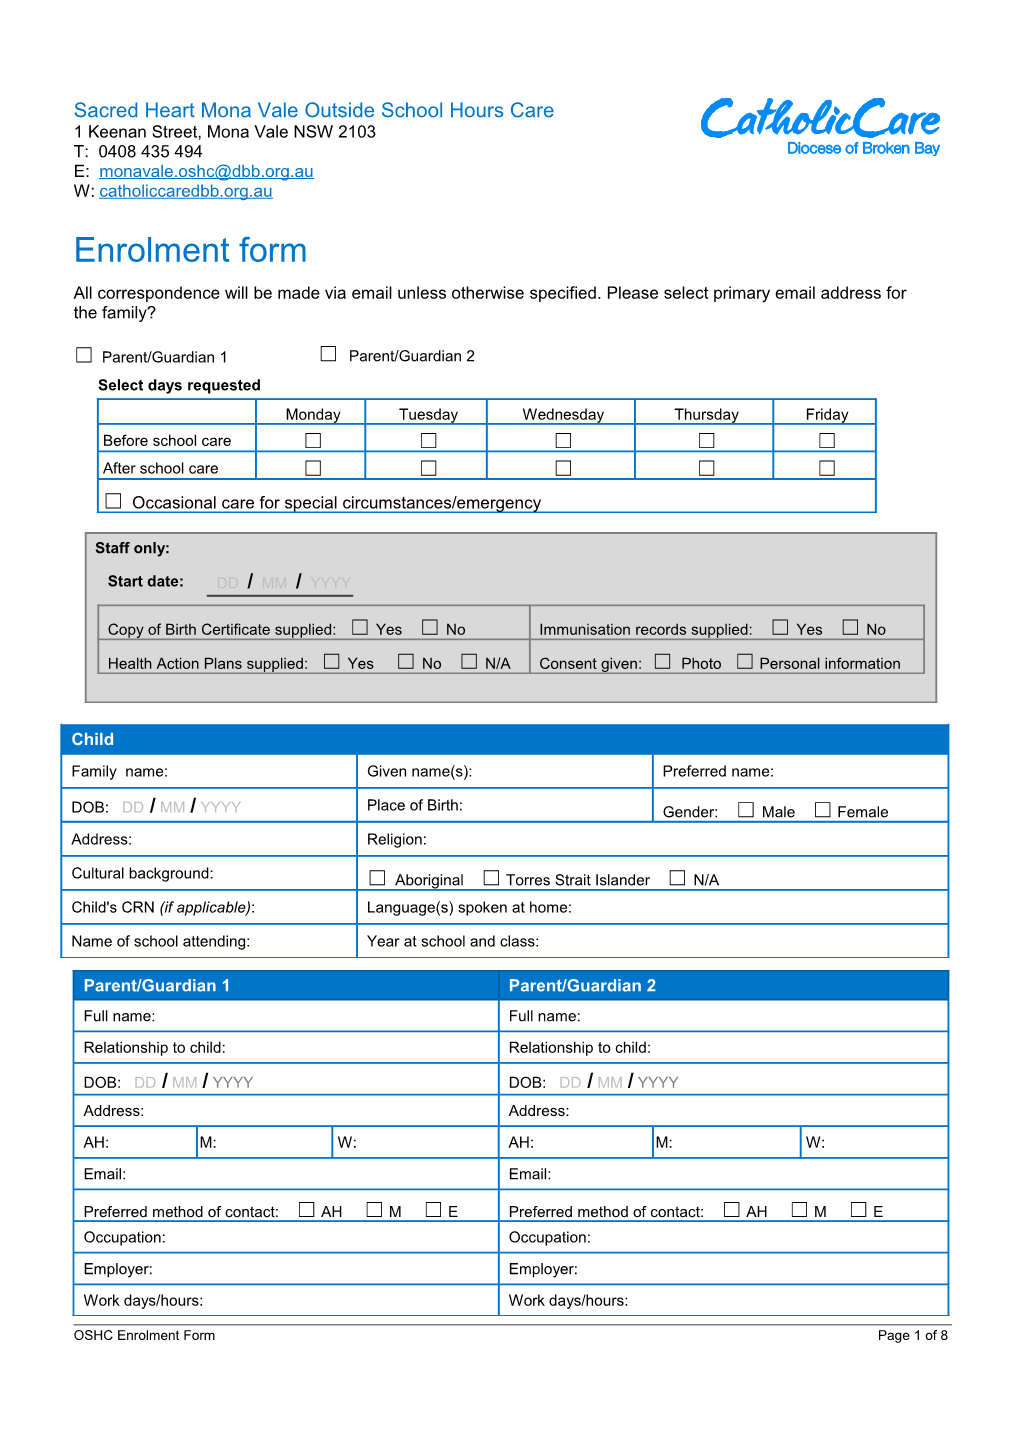 OSHC Enrolment Form